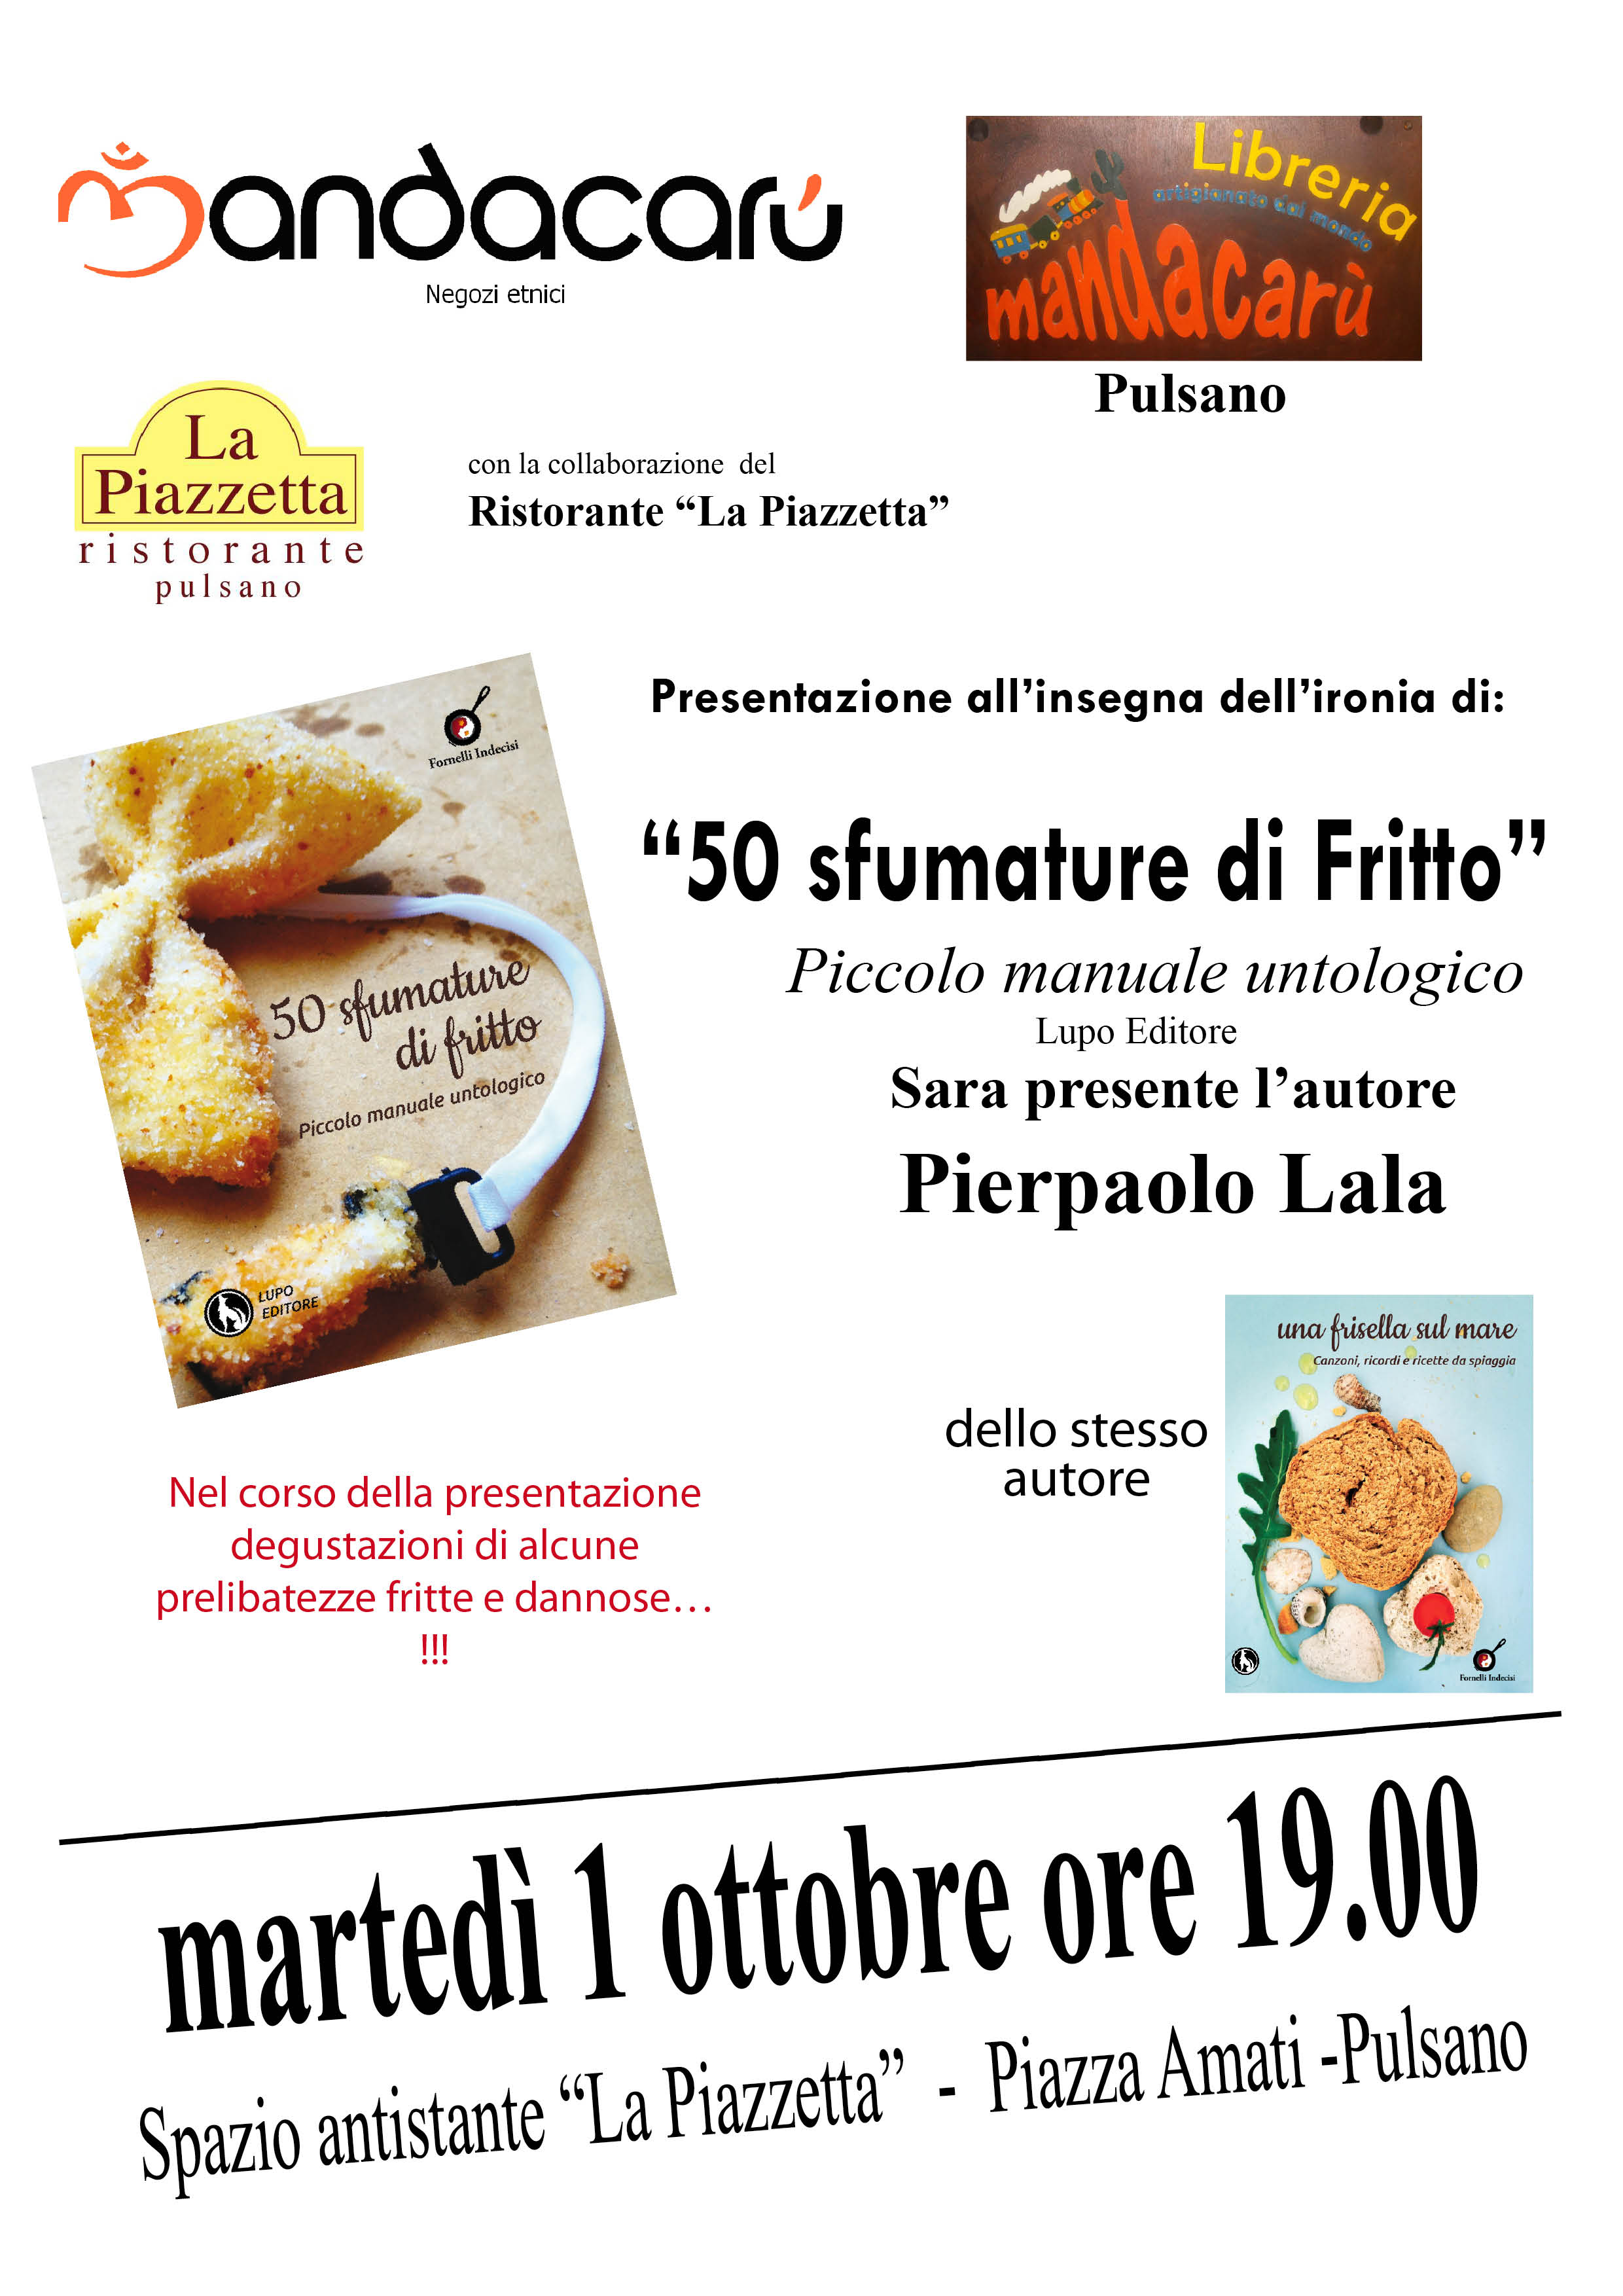 PULSANO (Ta). Il 1 ottobre presenta: “50 sfumature di fritto. Piccolo manuale untologico” di Pierpaolo Lala (Lupo Editore)